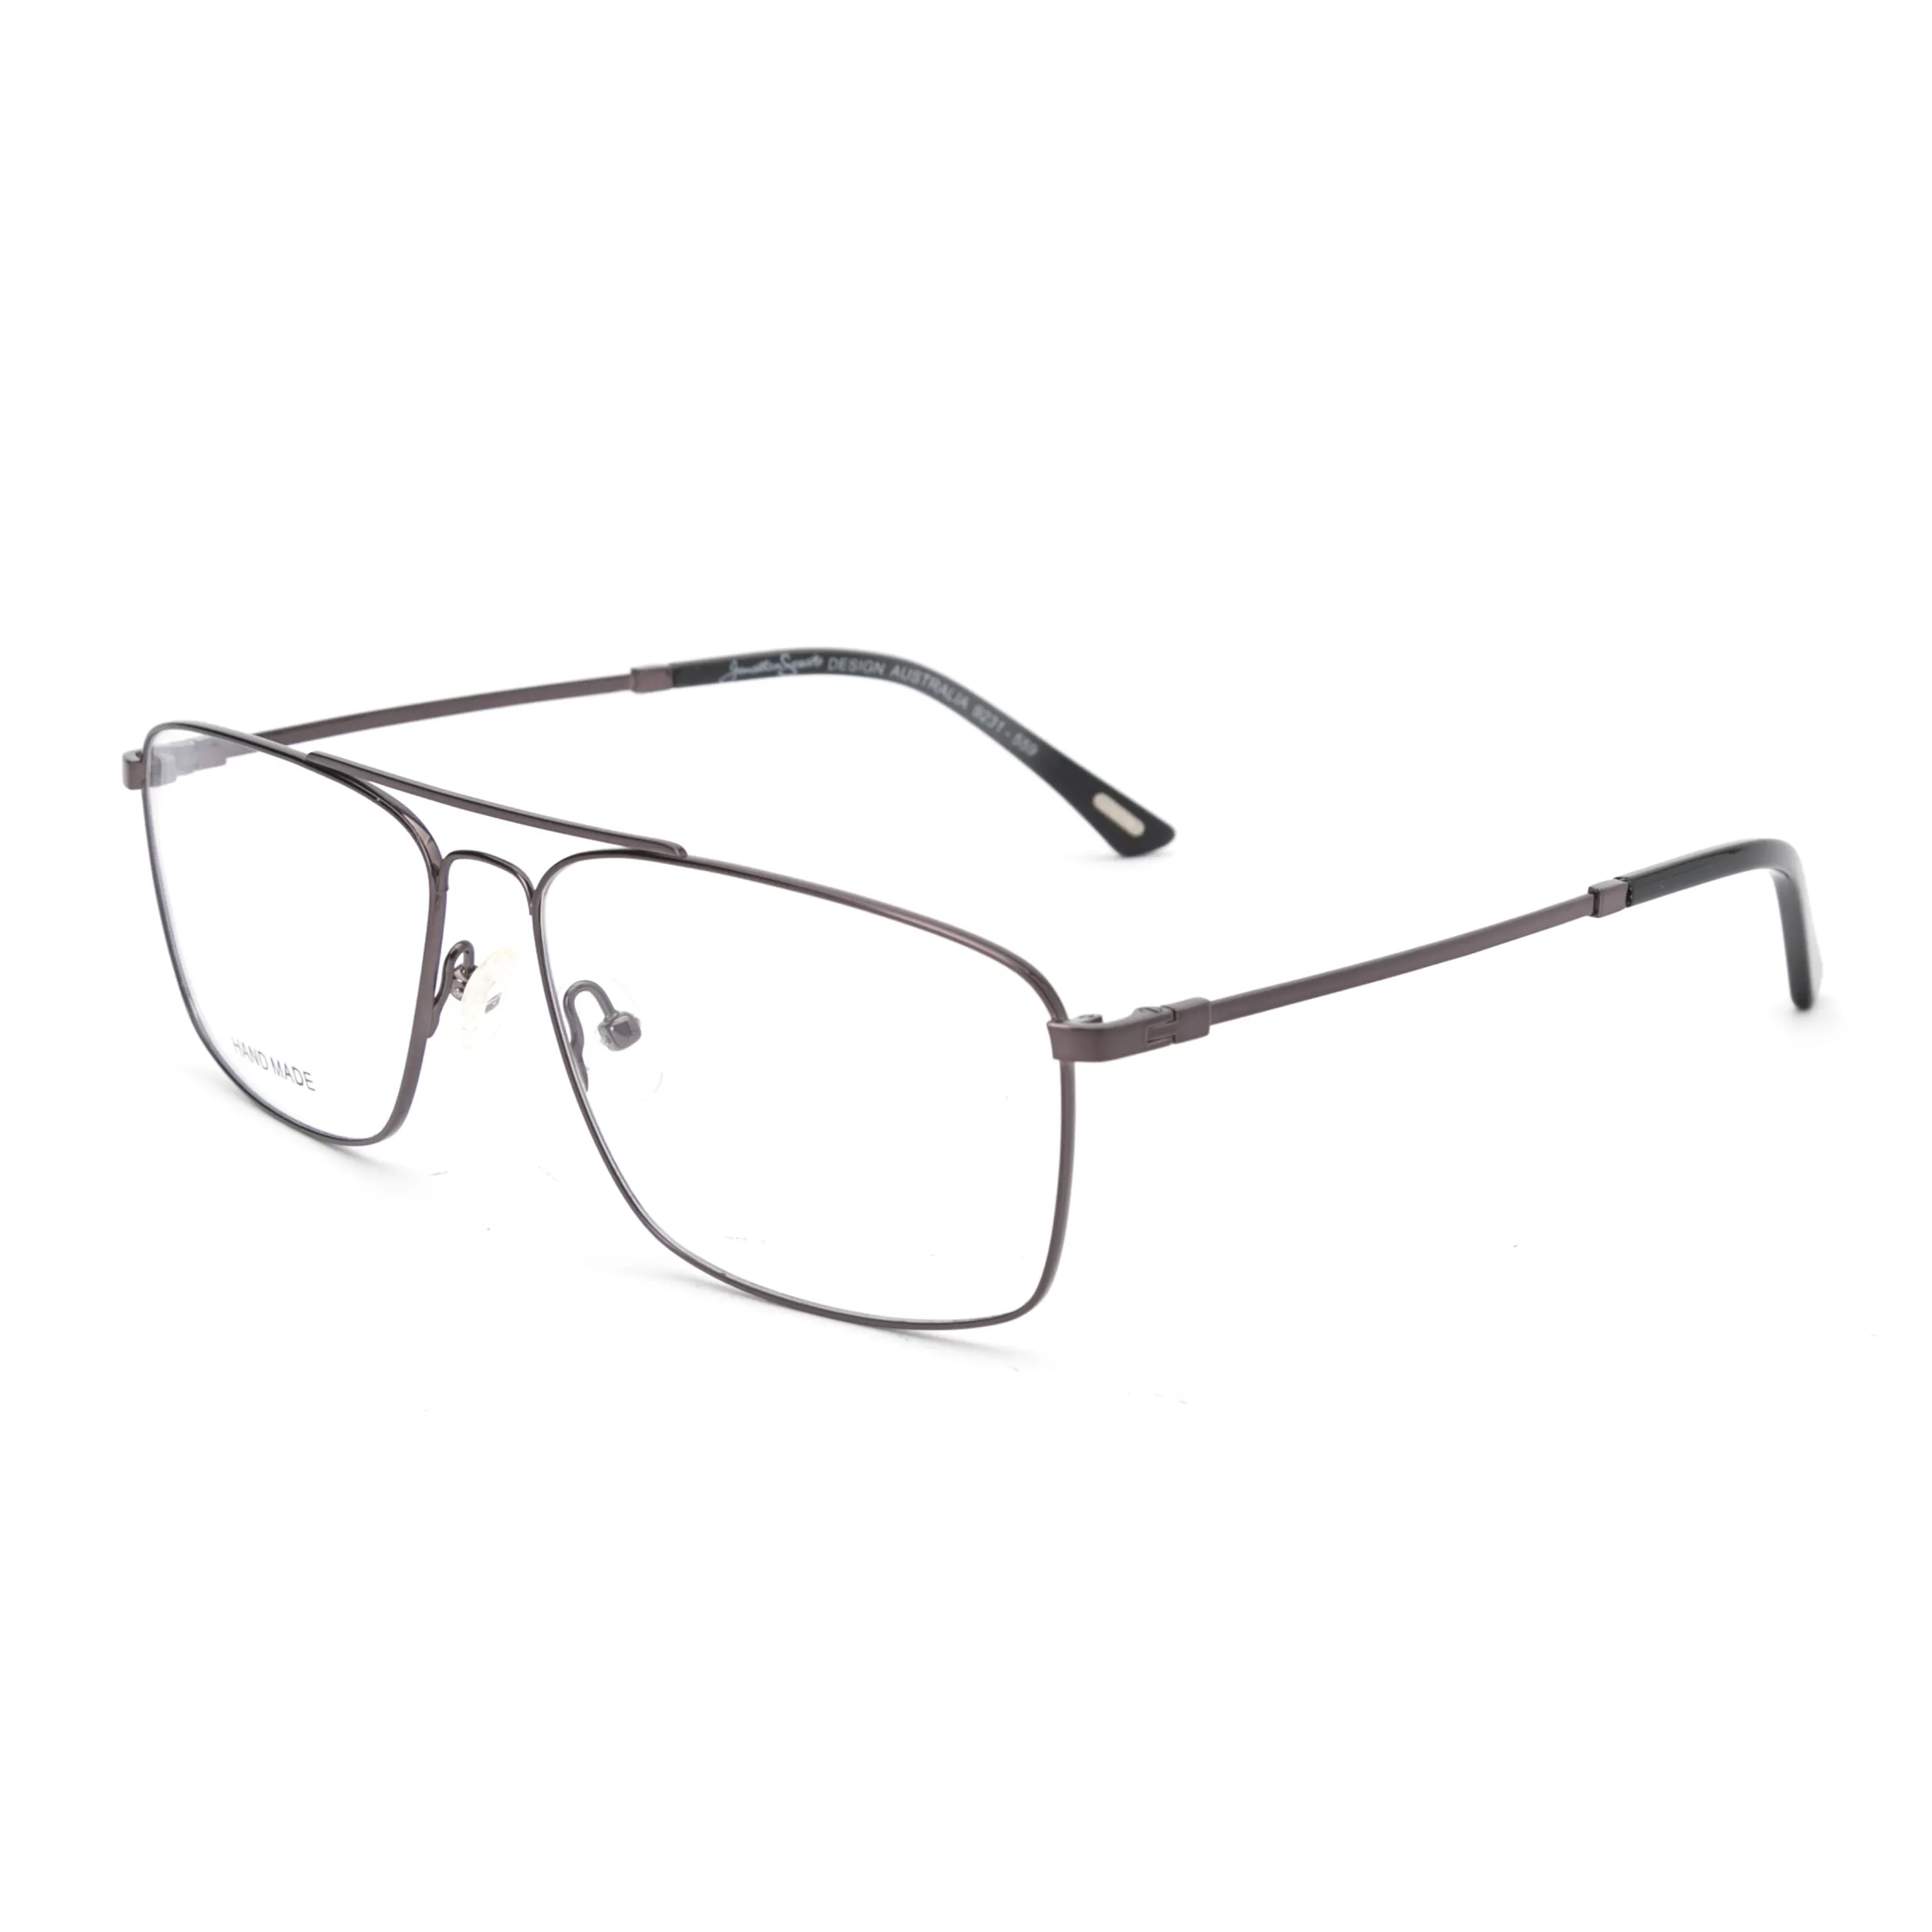 Montature per occhiali da vista ultraleggere alla moda con montatura sottile da uomo montature per occhiali da vista da uomo in titanio puro senza viti